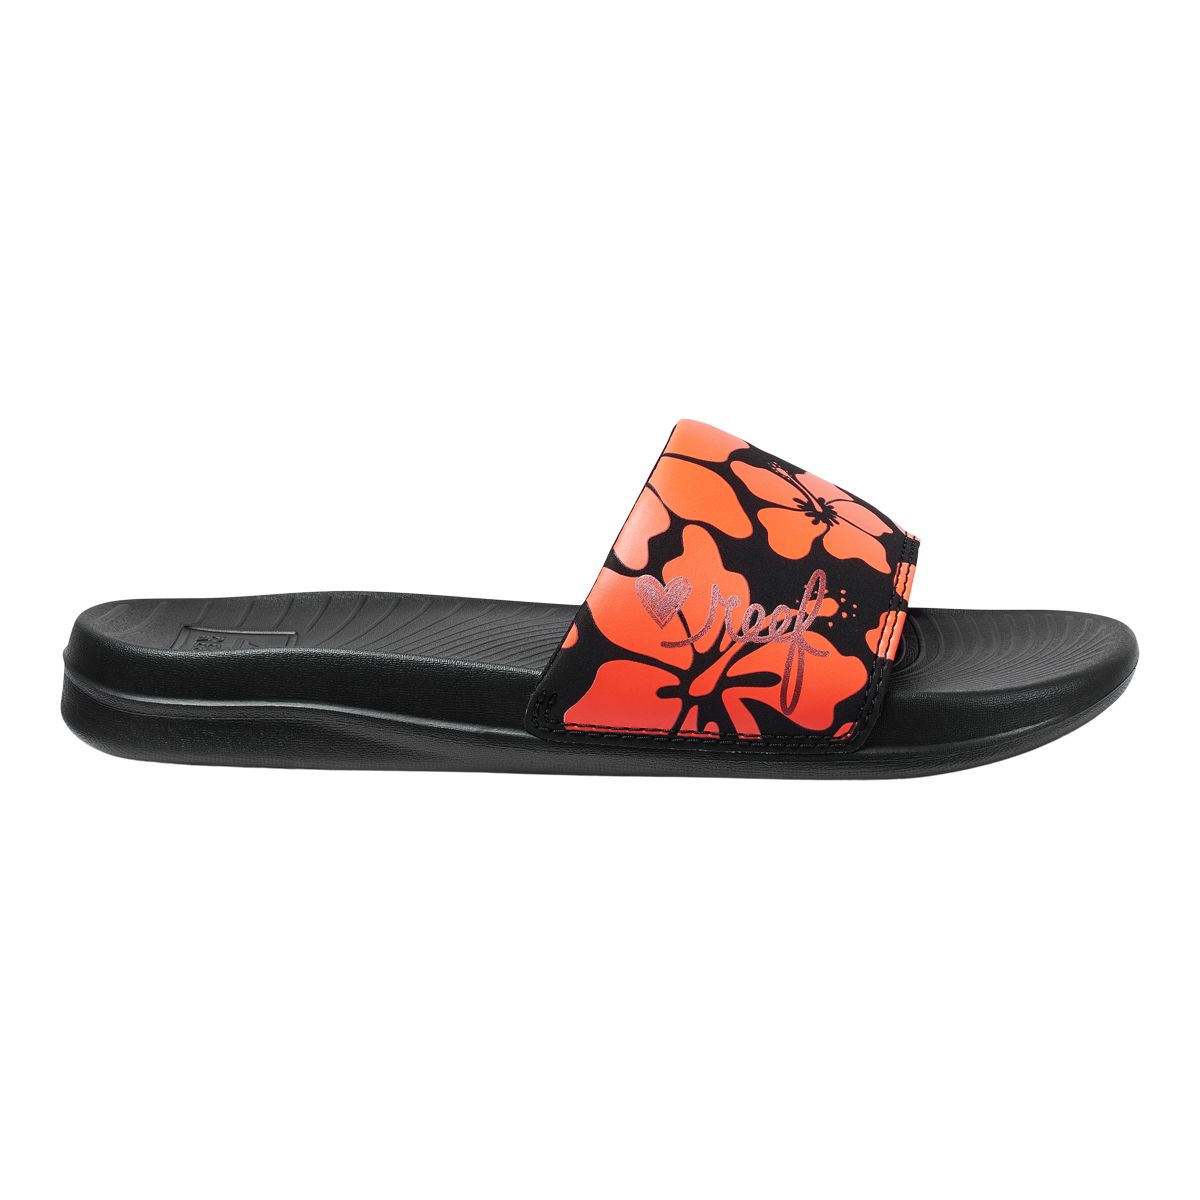 Roxy Women's Vista III Flip Flops/Sandals, Beach, Water Resistant